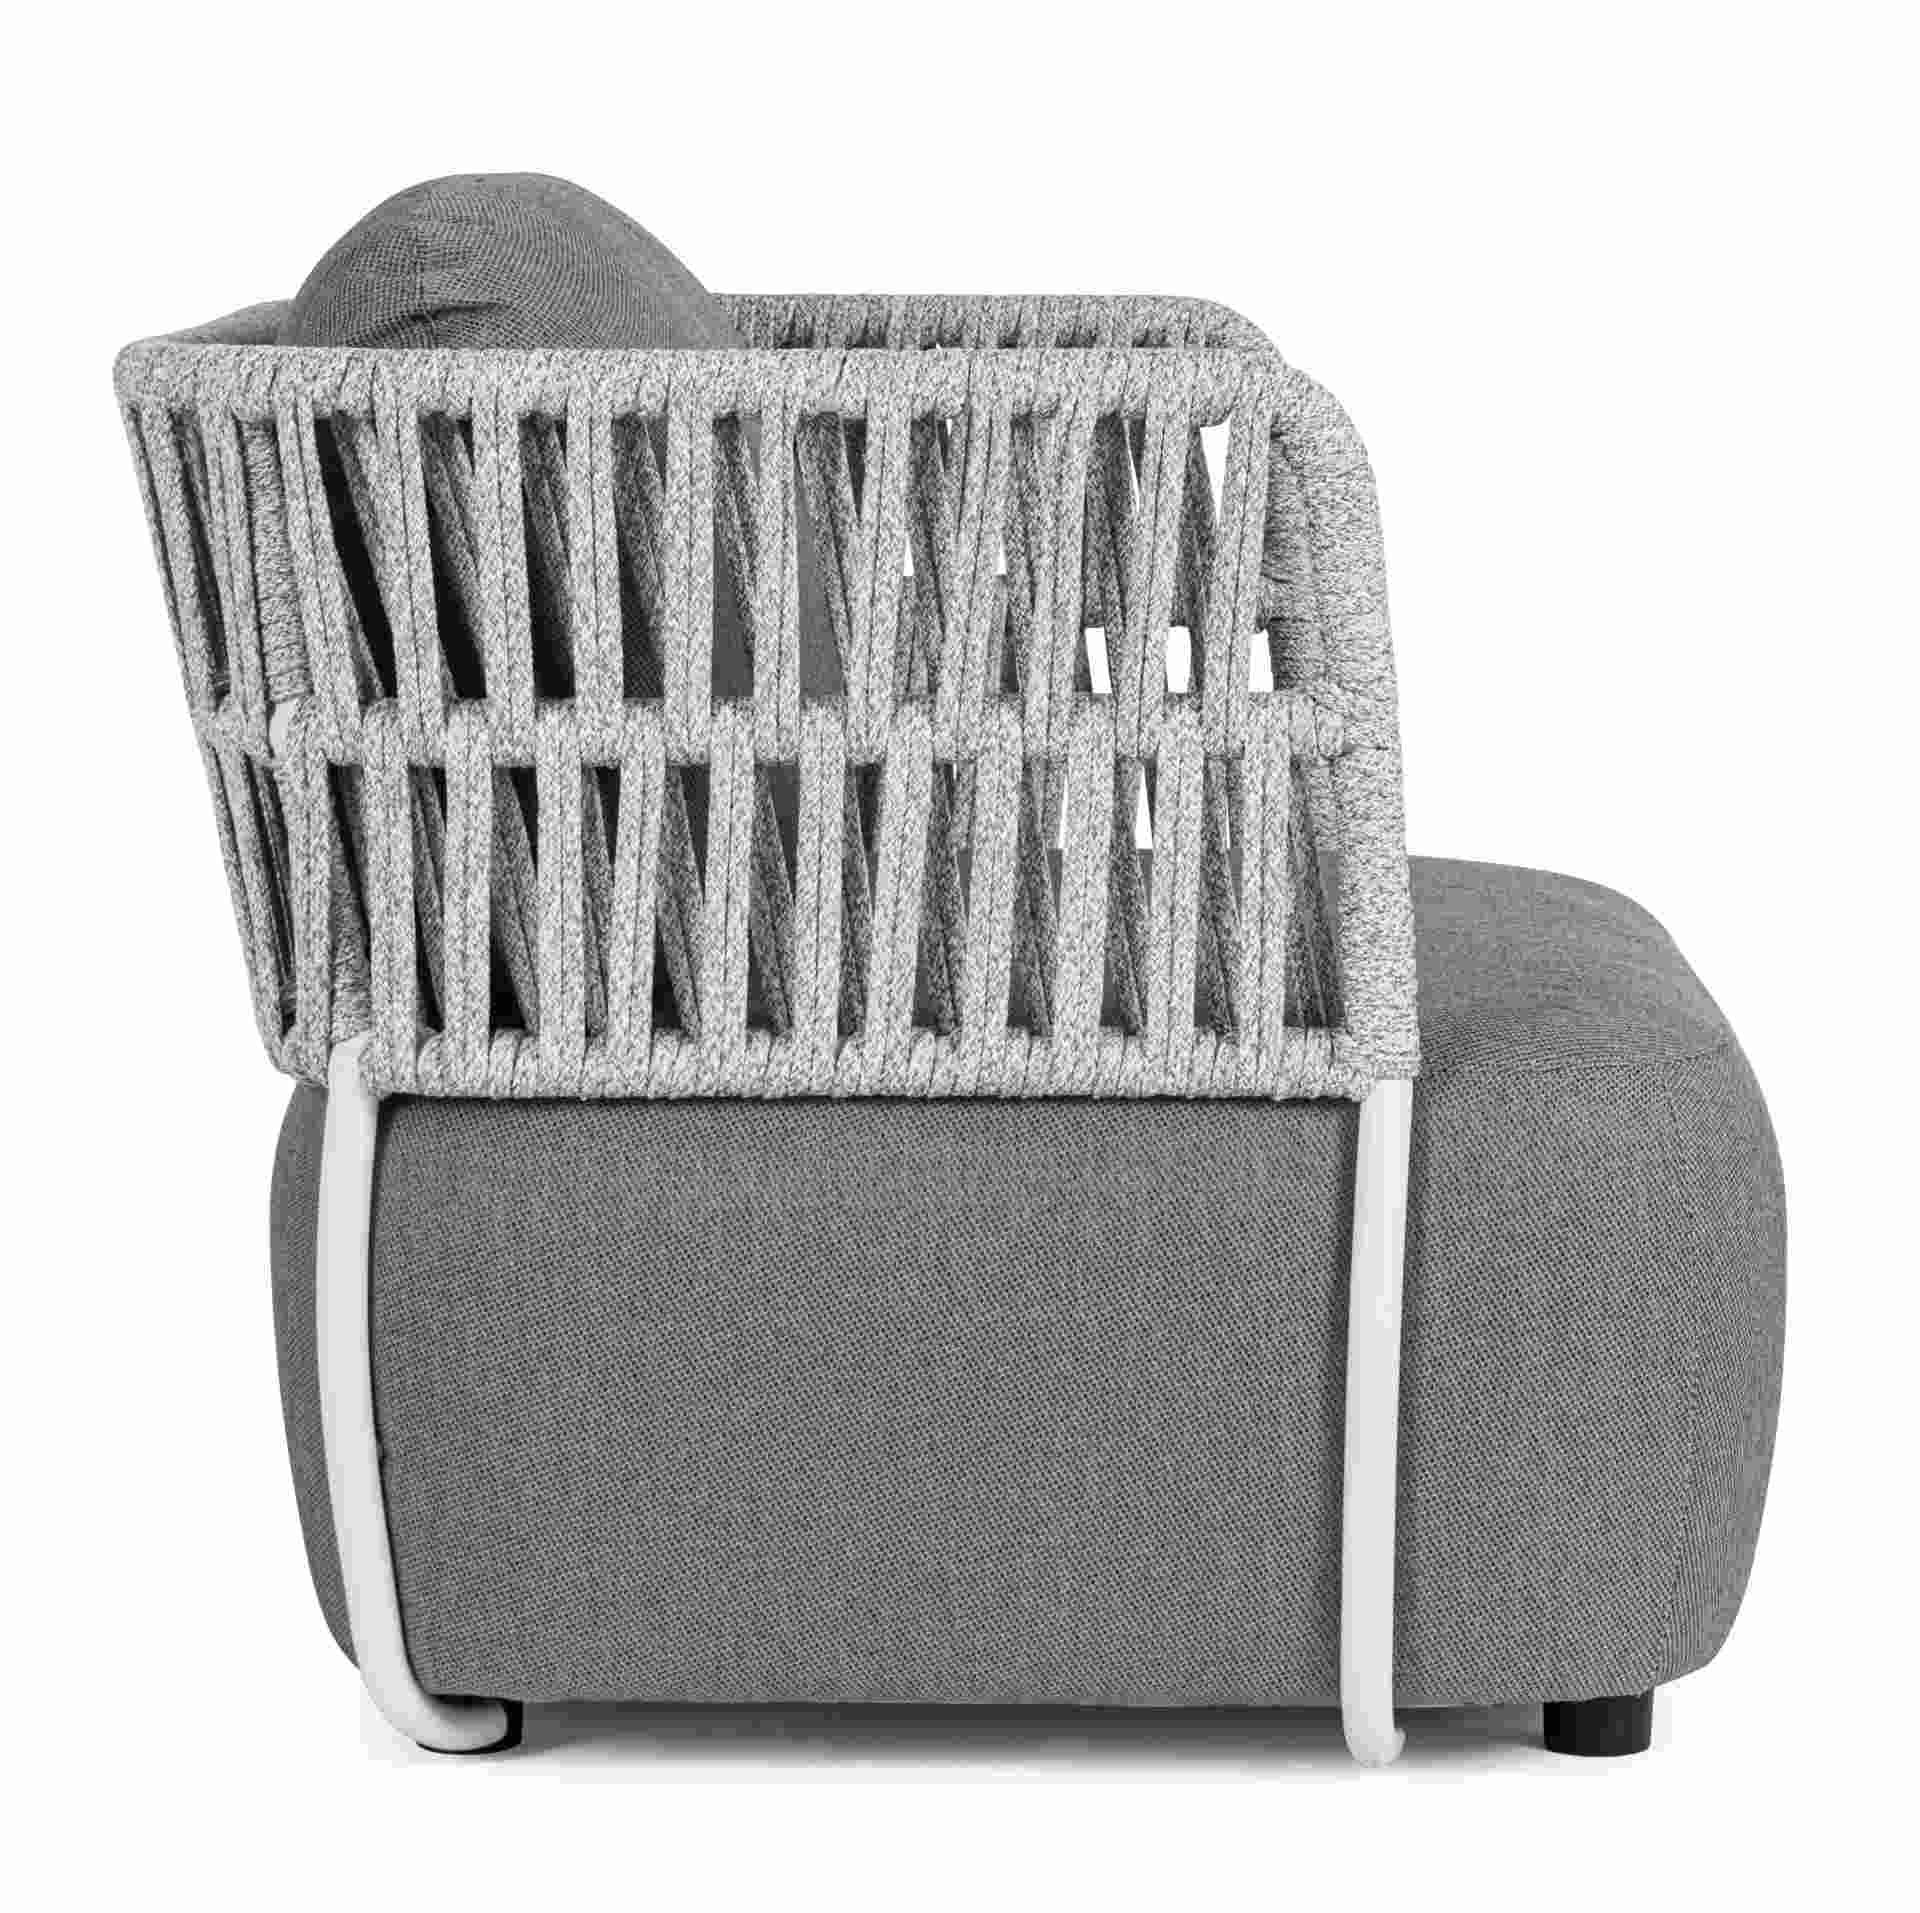 Der Gartensessel Palmer überzeugt mit seinem modernen Design. Gefertigt wurde er aus Olefin-Stoff, welcher einen grauen Farbton besitzt. Das Gestell ist aus Aluminium und hat eine weiße Farbe. Der Sessel verfügt über eine Sitzhöhe von 40 cm und ist für de